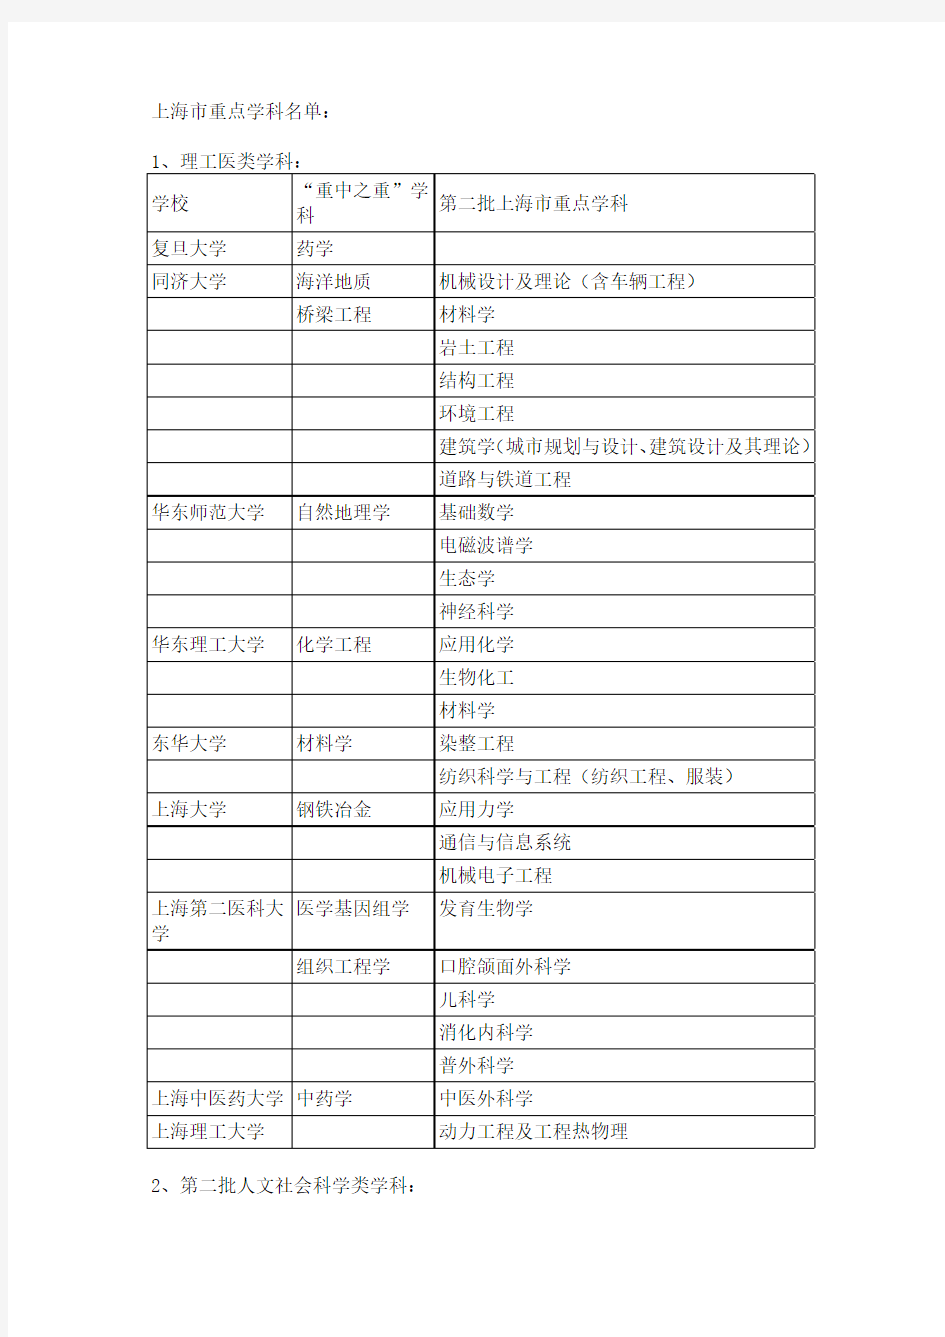 上海市重点学科名单